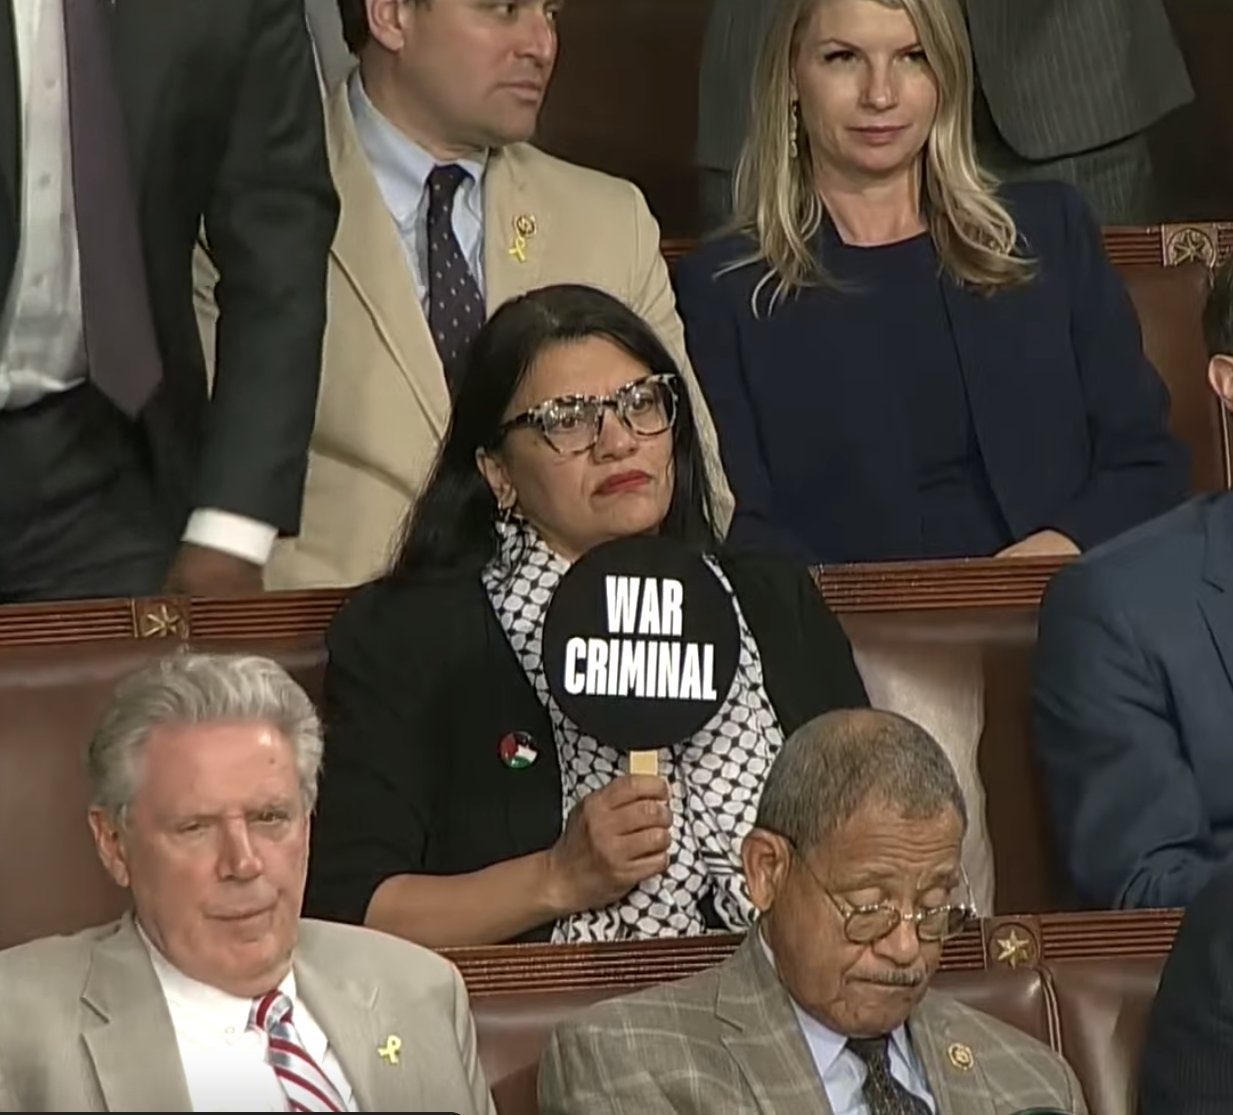 امریکی قانون ساز راشیدہ طلیب نے نیتن یاہو کو  کانگریس تقریر کے دوران "جنگی مجرم" کا پلے کارڈ  دکھایا 